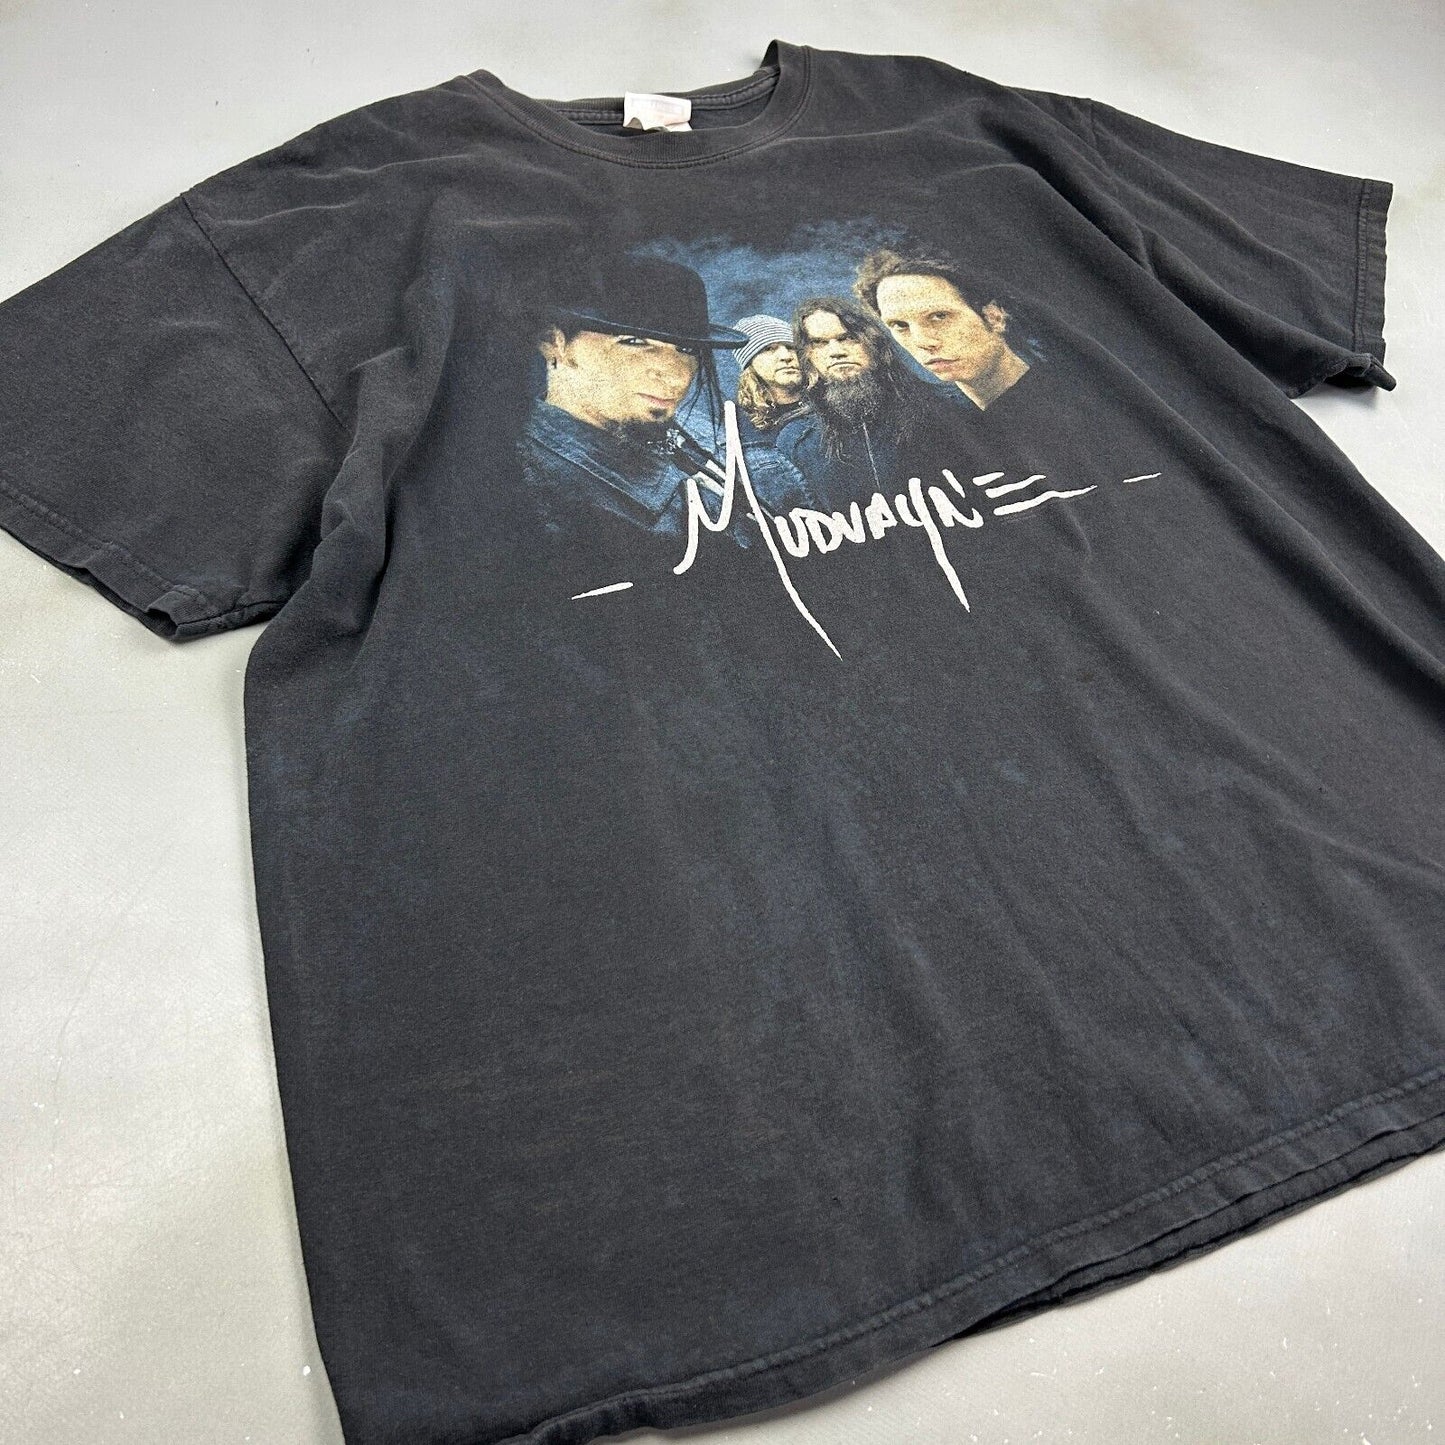 VINTAGE | Muduayn Black Band T-Shirt sz XL Men Adult